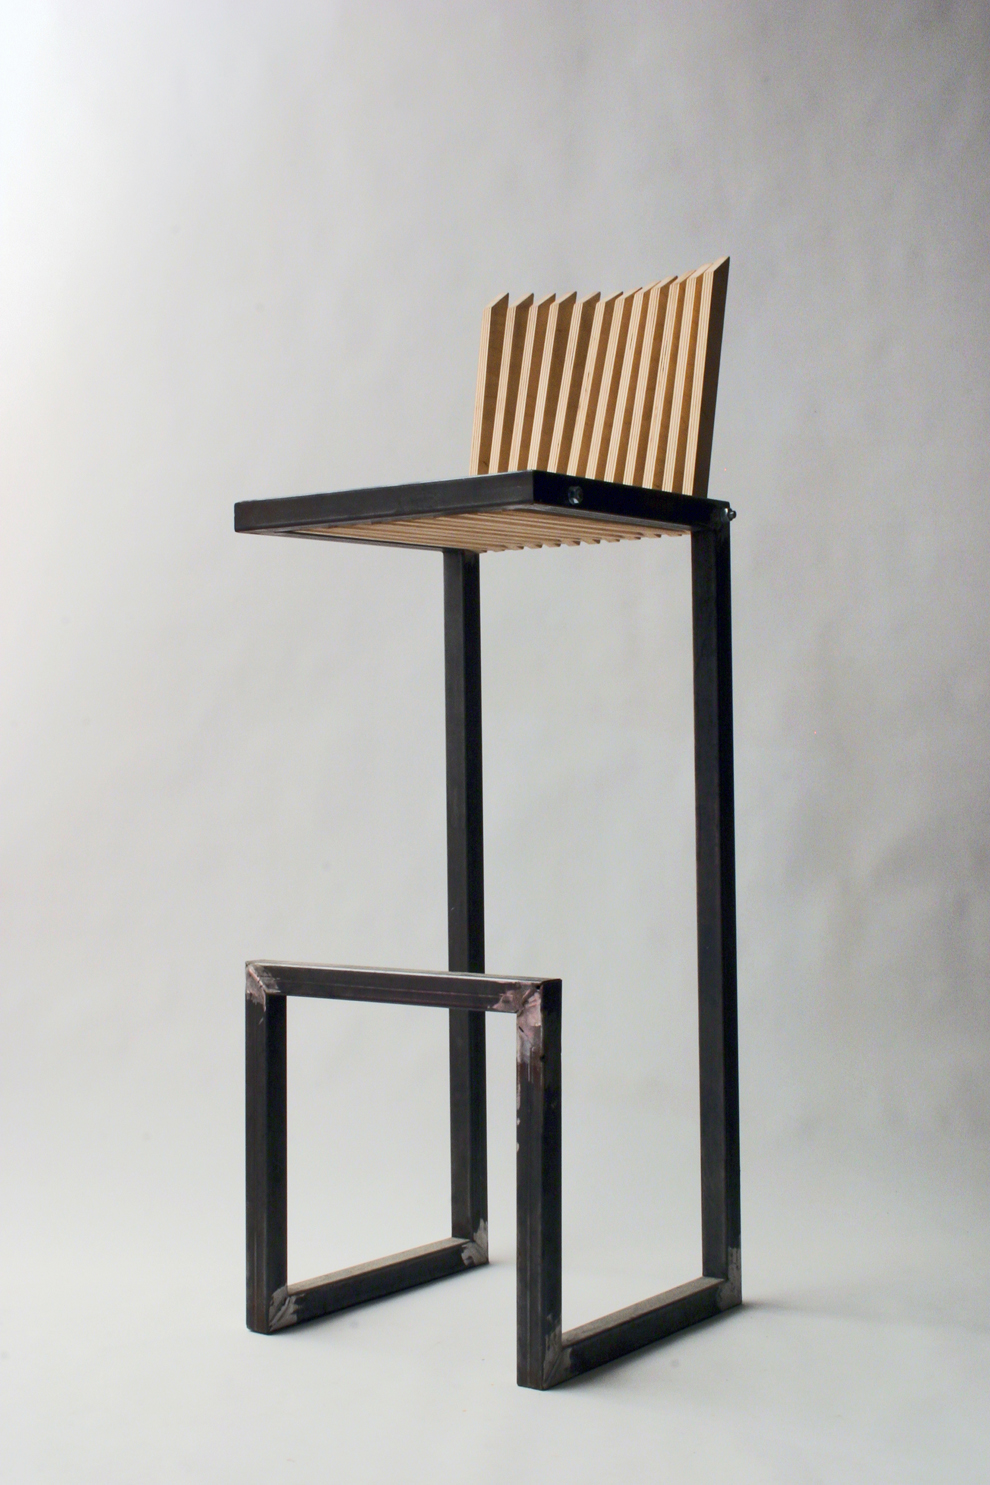 design d'objet, design artisanal, mobilier, meuble, chaise design